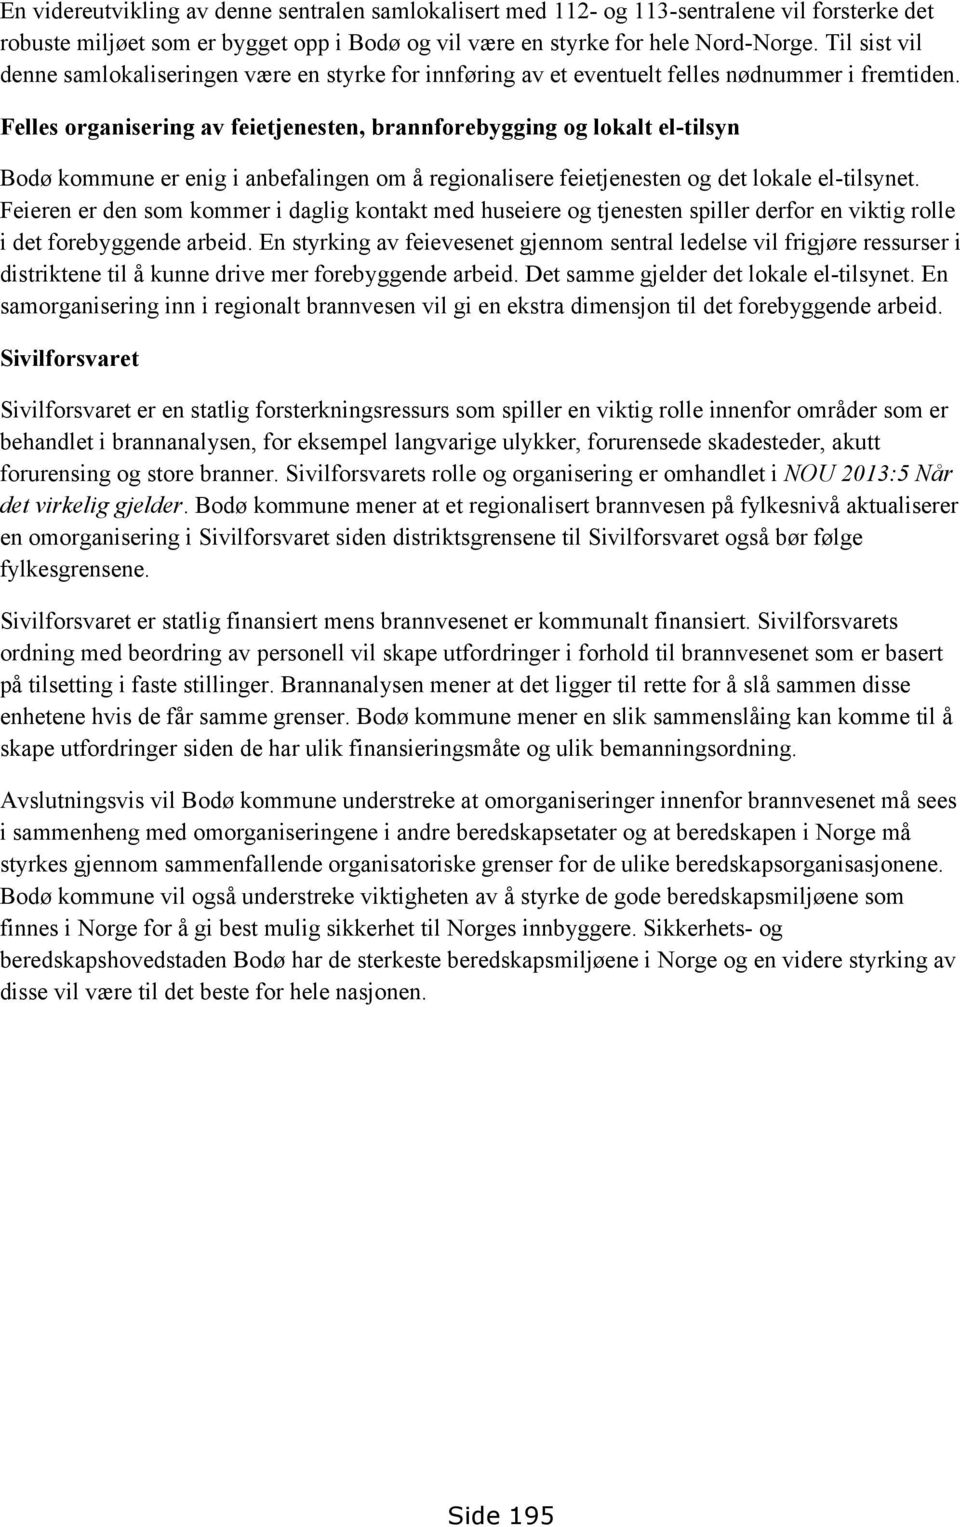 Felles organisering av feietjenesten, brannforebygging og lokalt el-tilsyn Bodø kommune er enig i anbefalingen om å regionalisere feietjenesten og det lokale el-tilsynet.